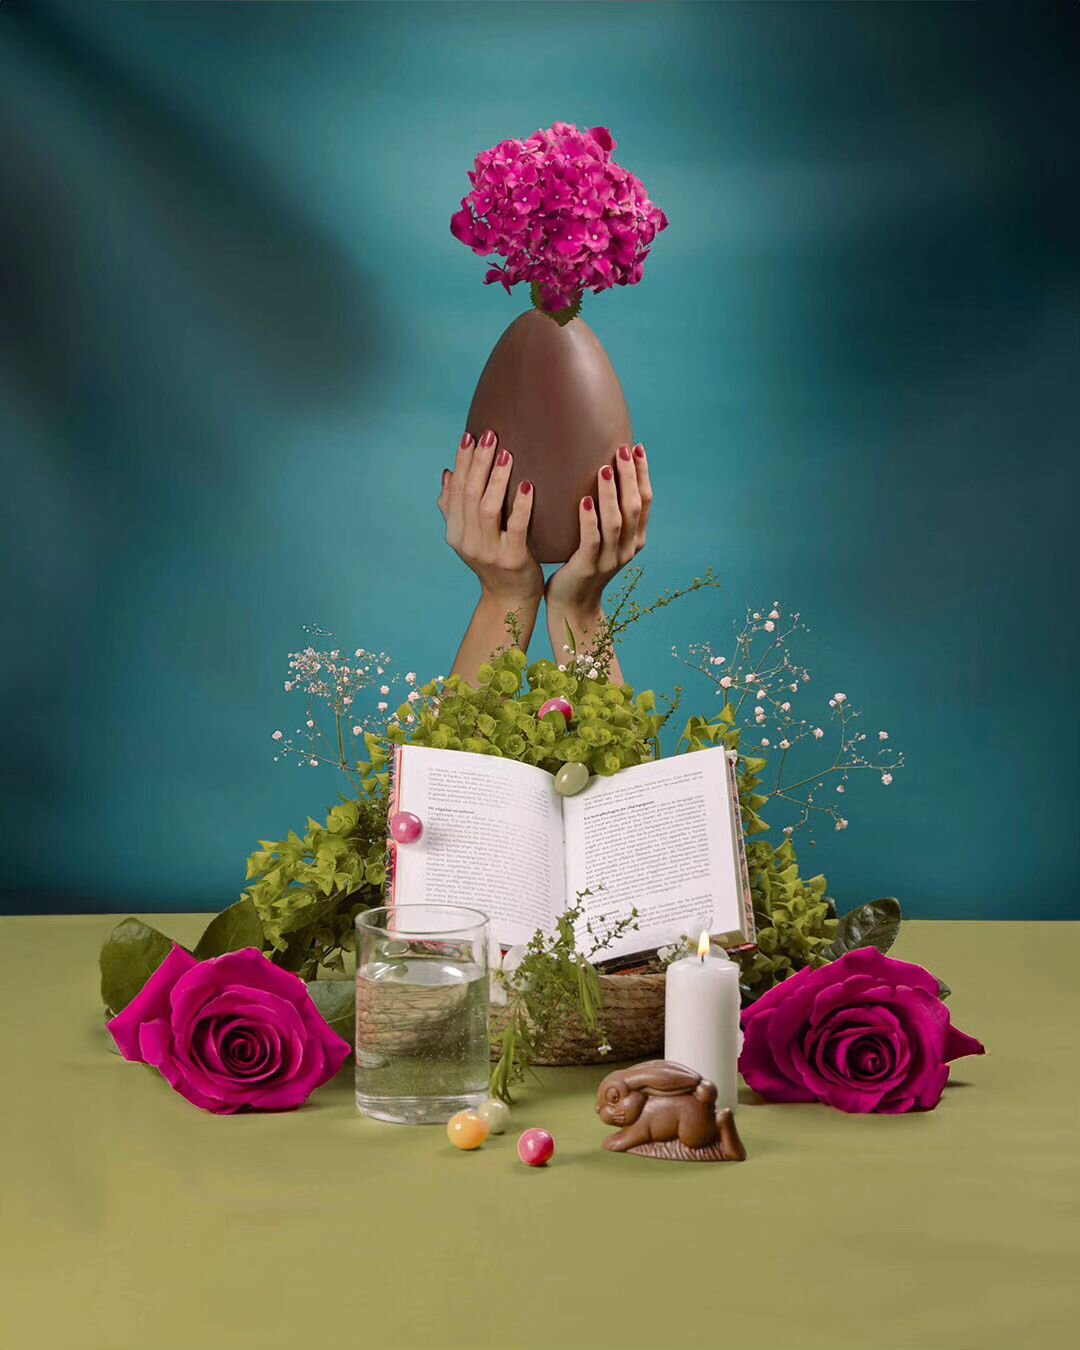 Ostara, le rituel de printemps! 
Projet de photographie conceptuelle et &eacute;ditoriale.
.
.
.
#ostara #printemps #paques #chocolat #photographie #photographe #editorial #photographieconceptuelle